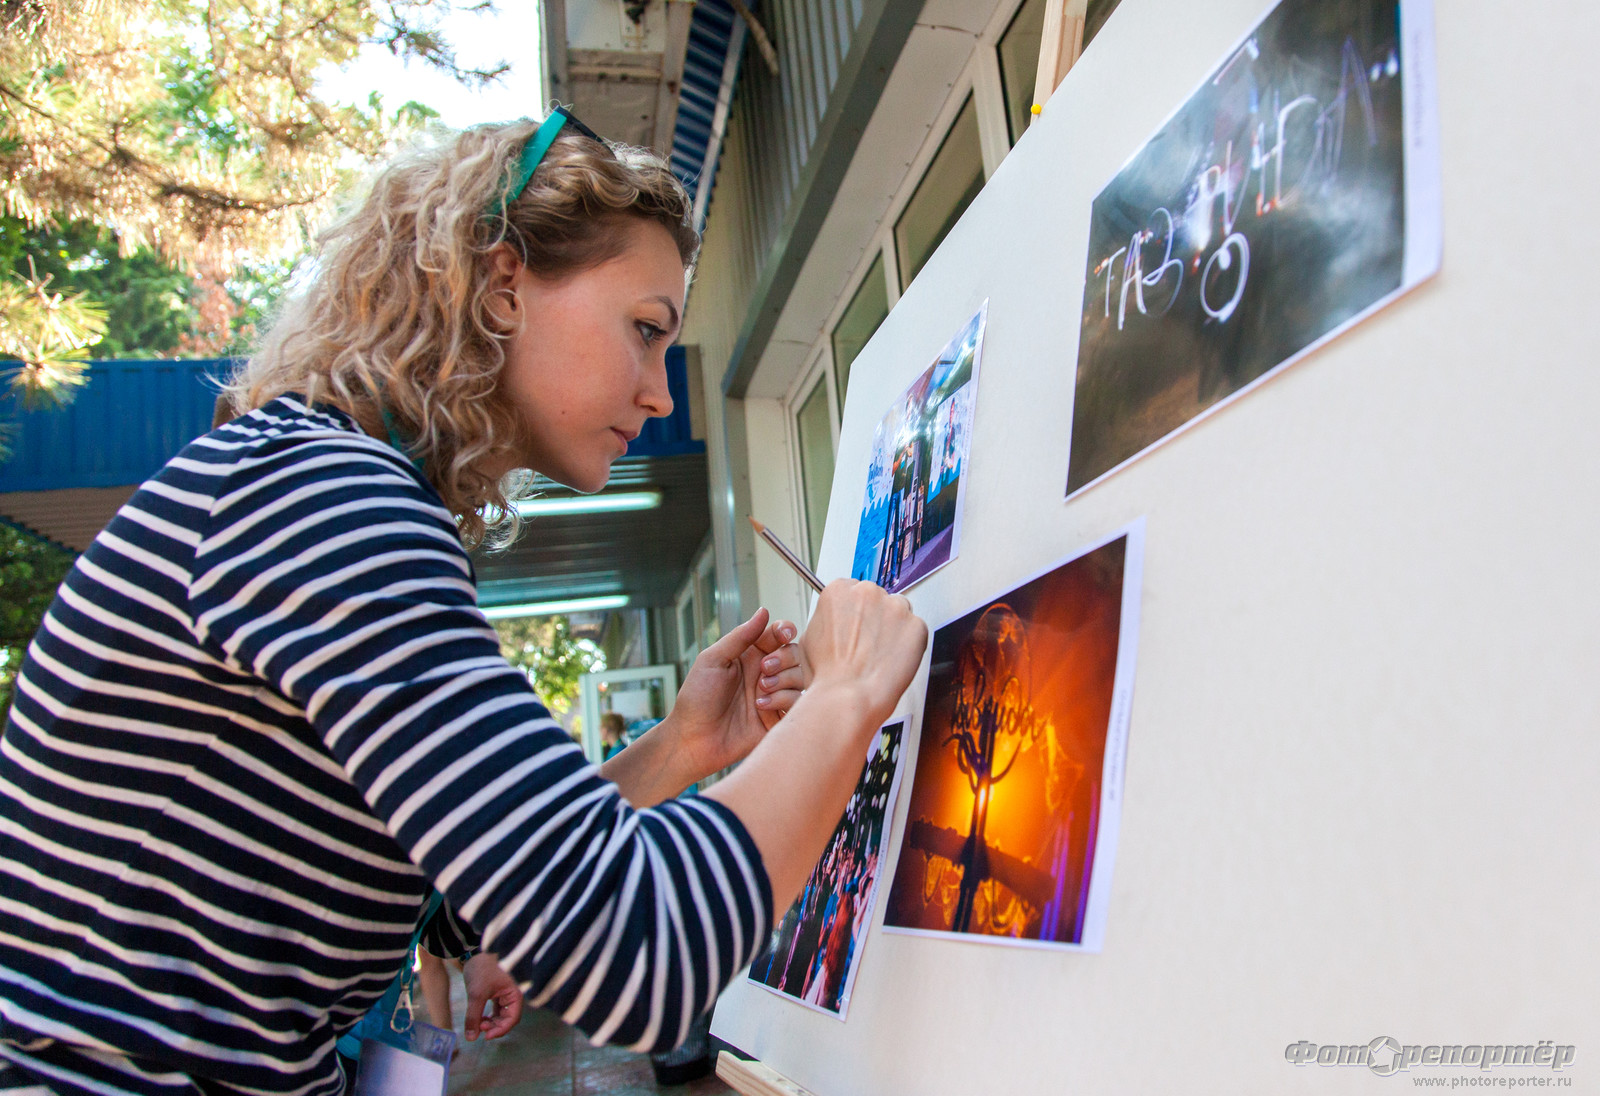 Всероссийский молодёжный образовательный форум для творческой молодежи «Таврида»